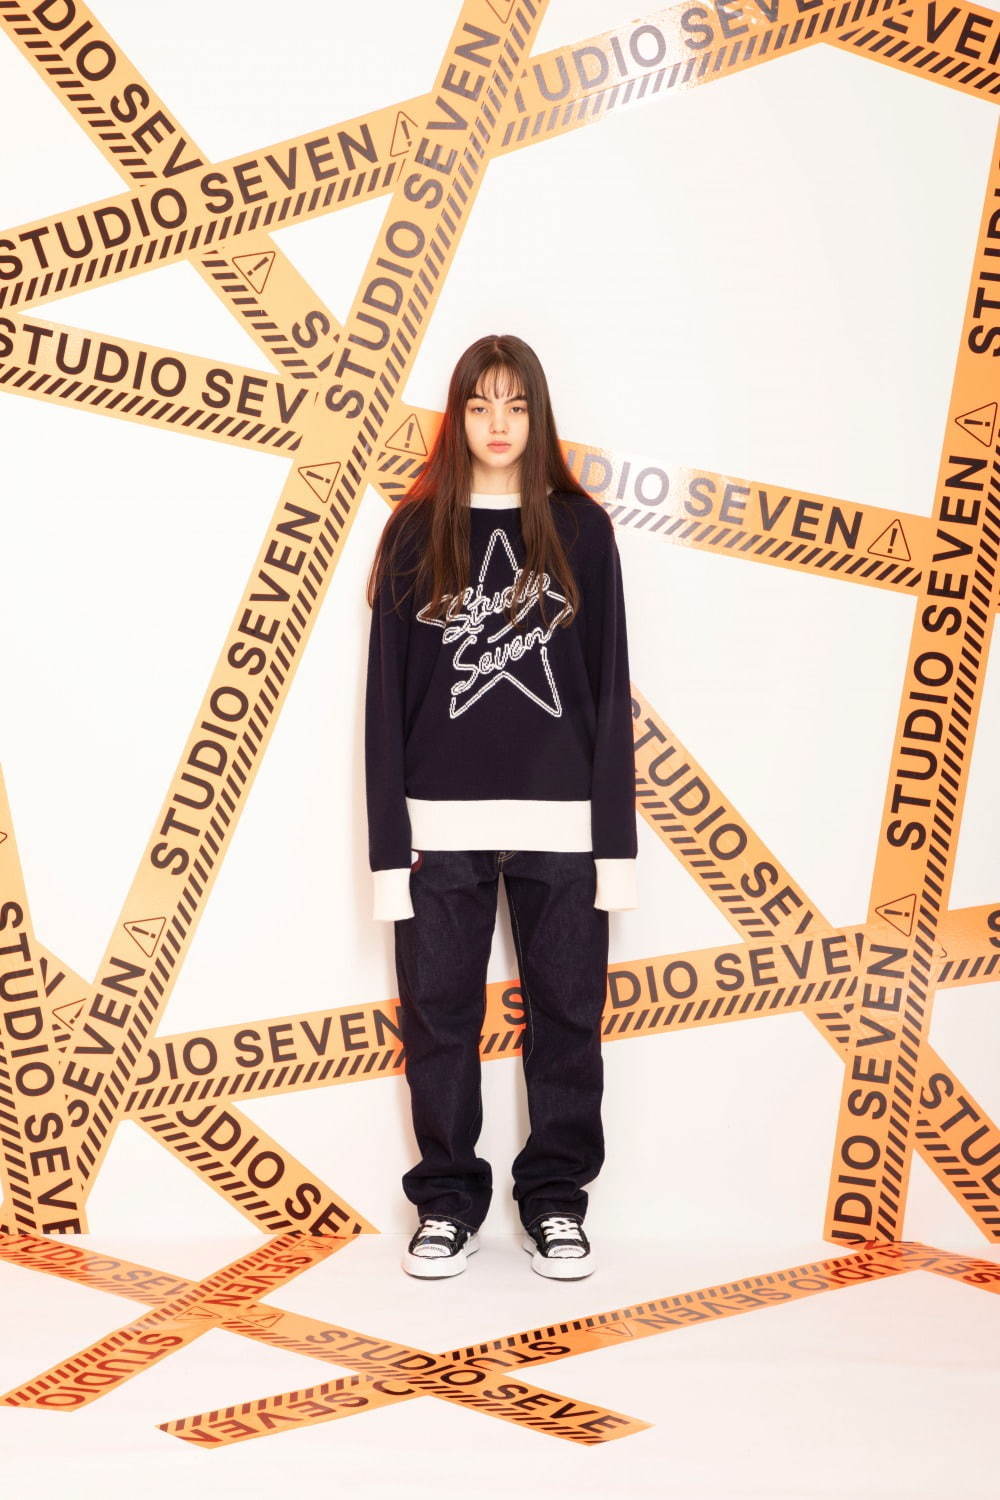 スタジオ セブン(STUDIO SEVEN) 2019-20年秋冬ウィメンズ&メンズコレクション  - 写真39